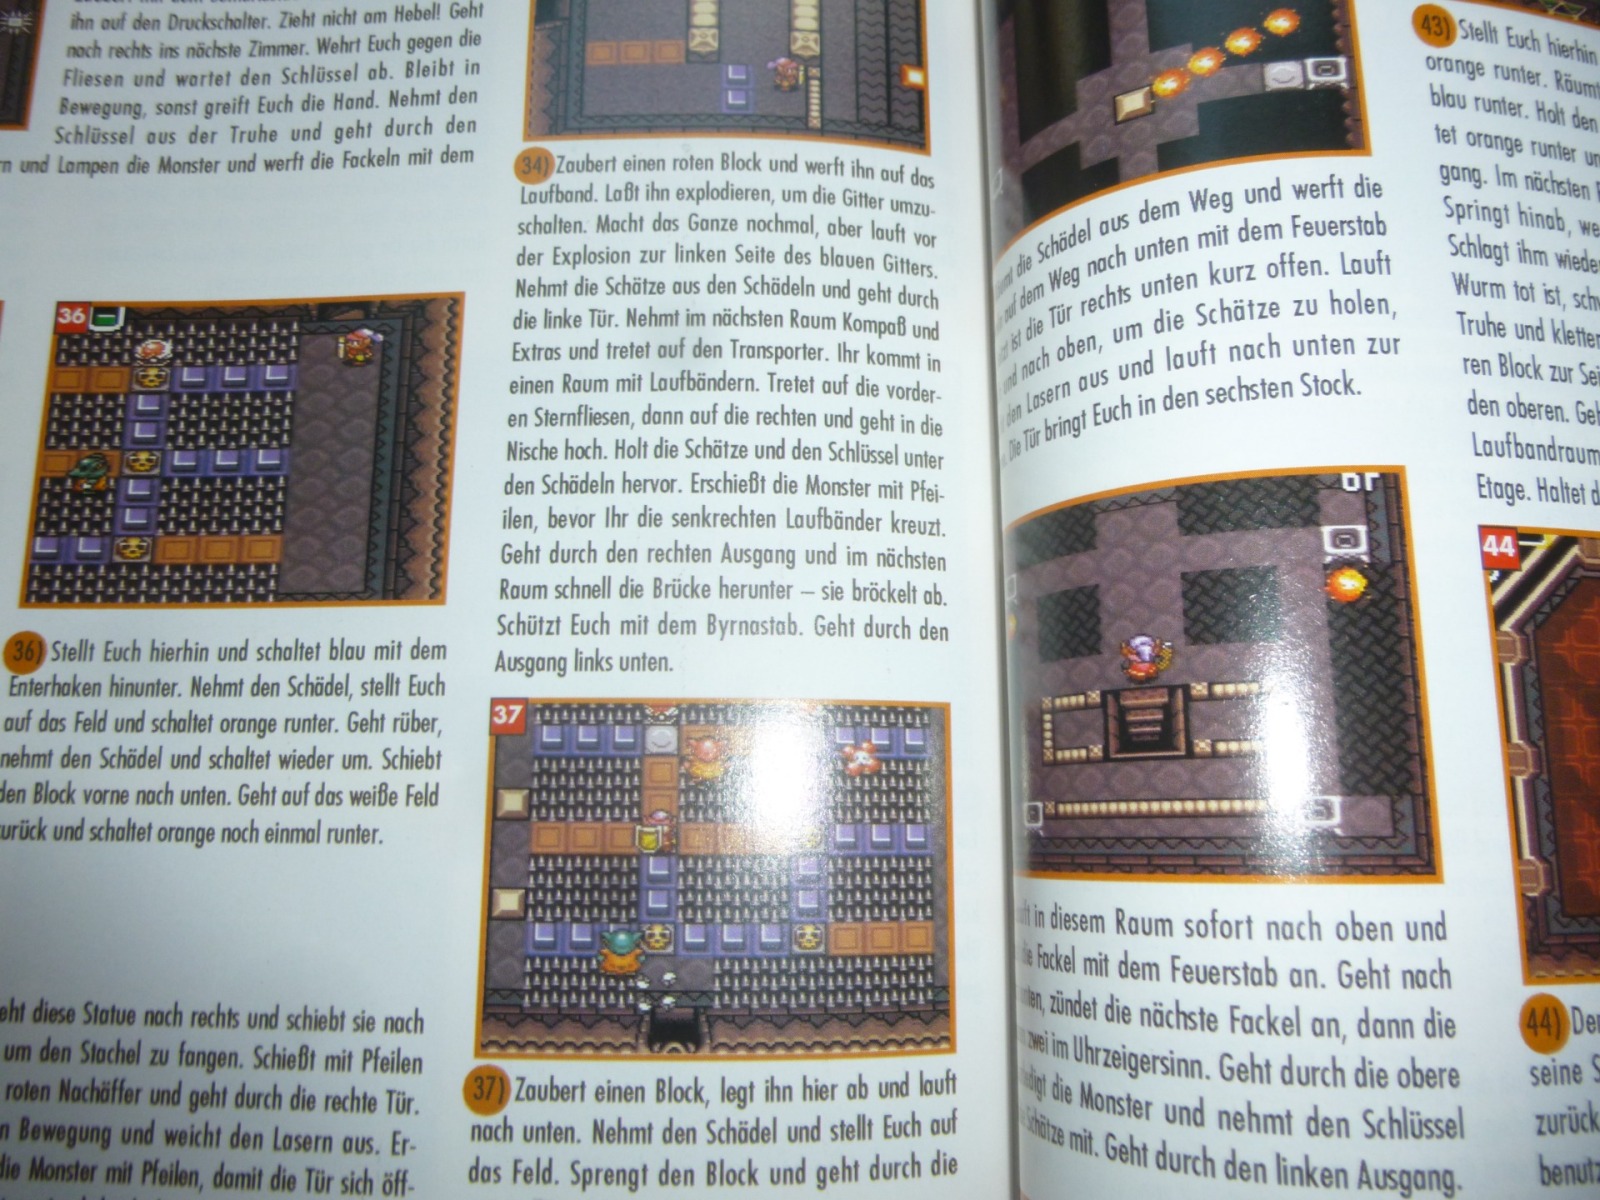 TOTAL Das unabhängige Magazin - 100% Nintendo - Ausgabe 9/93 1993 32